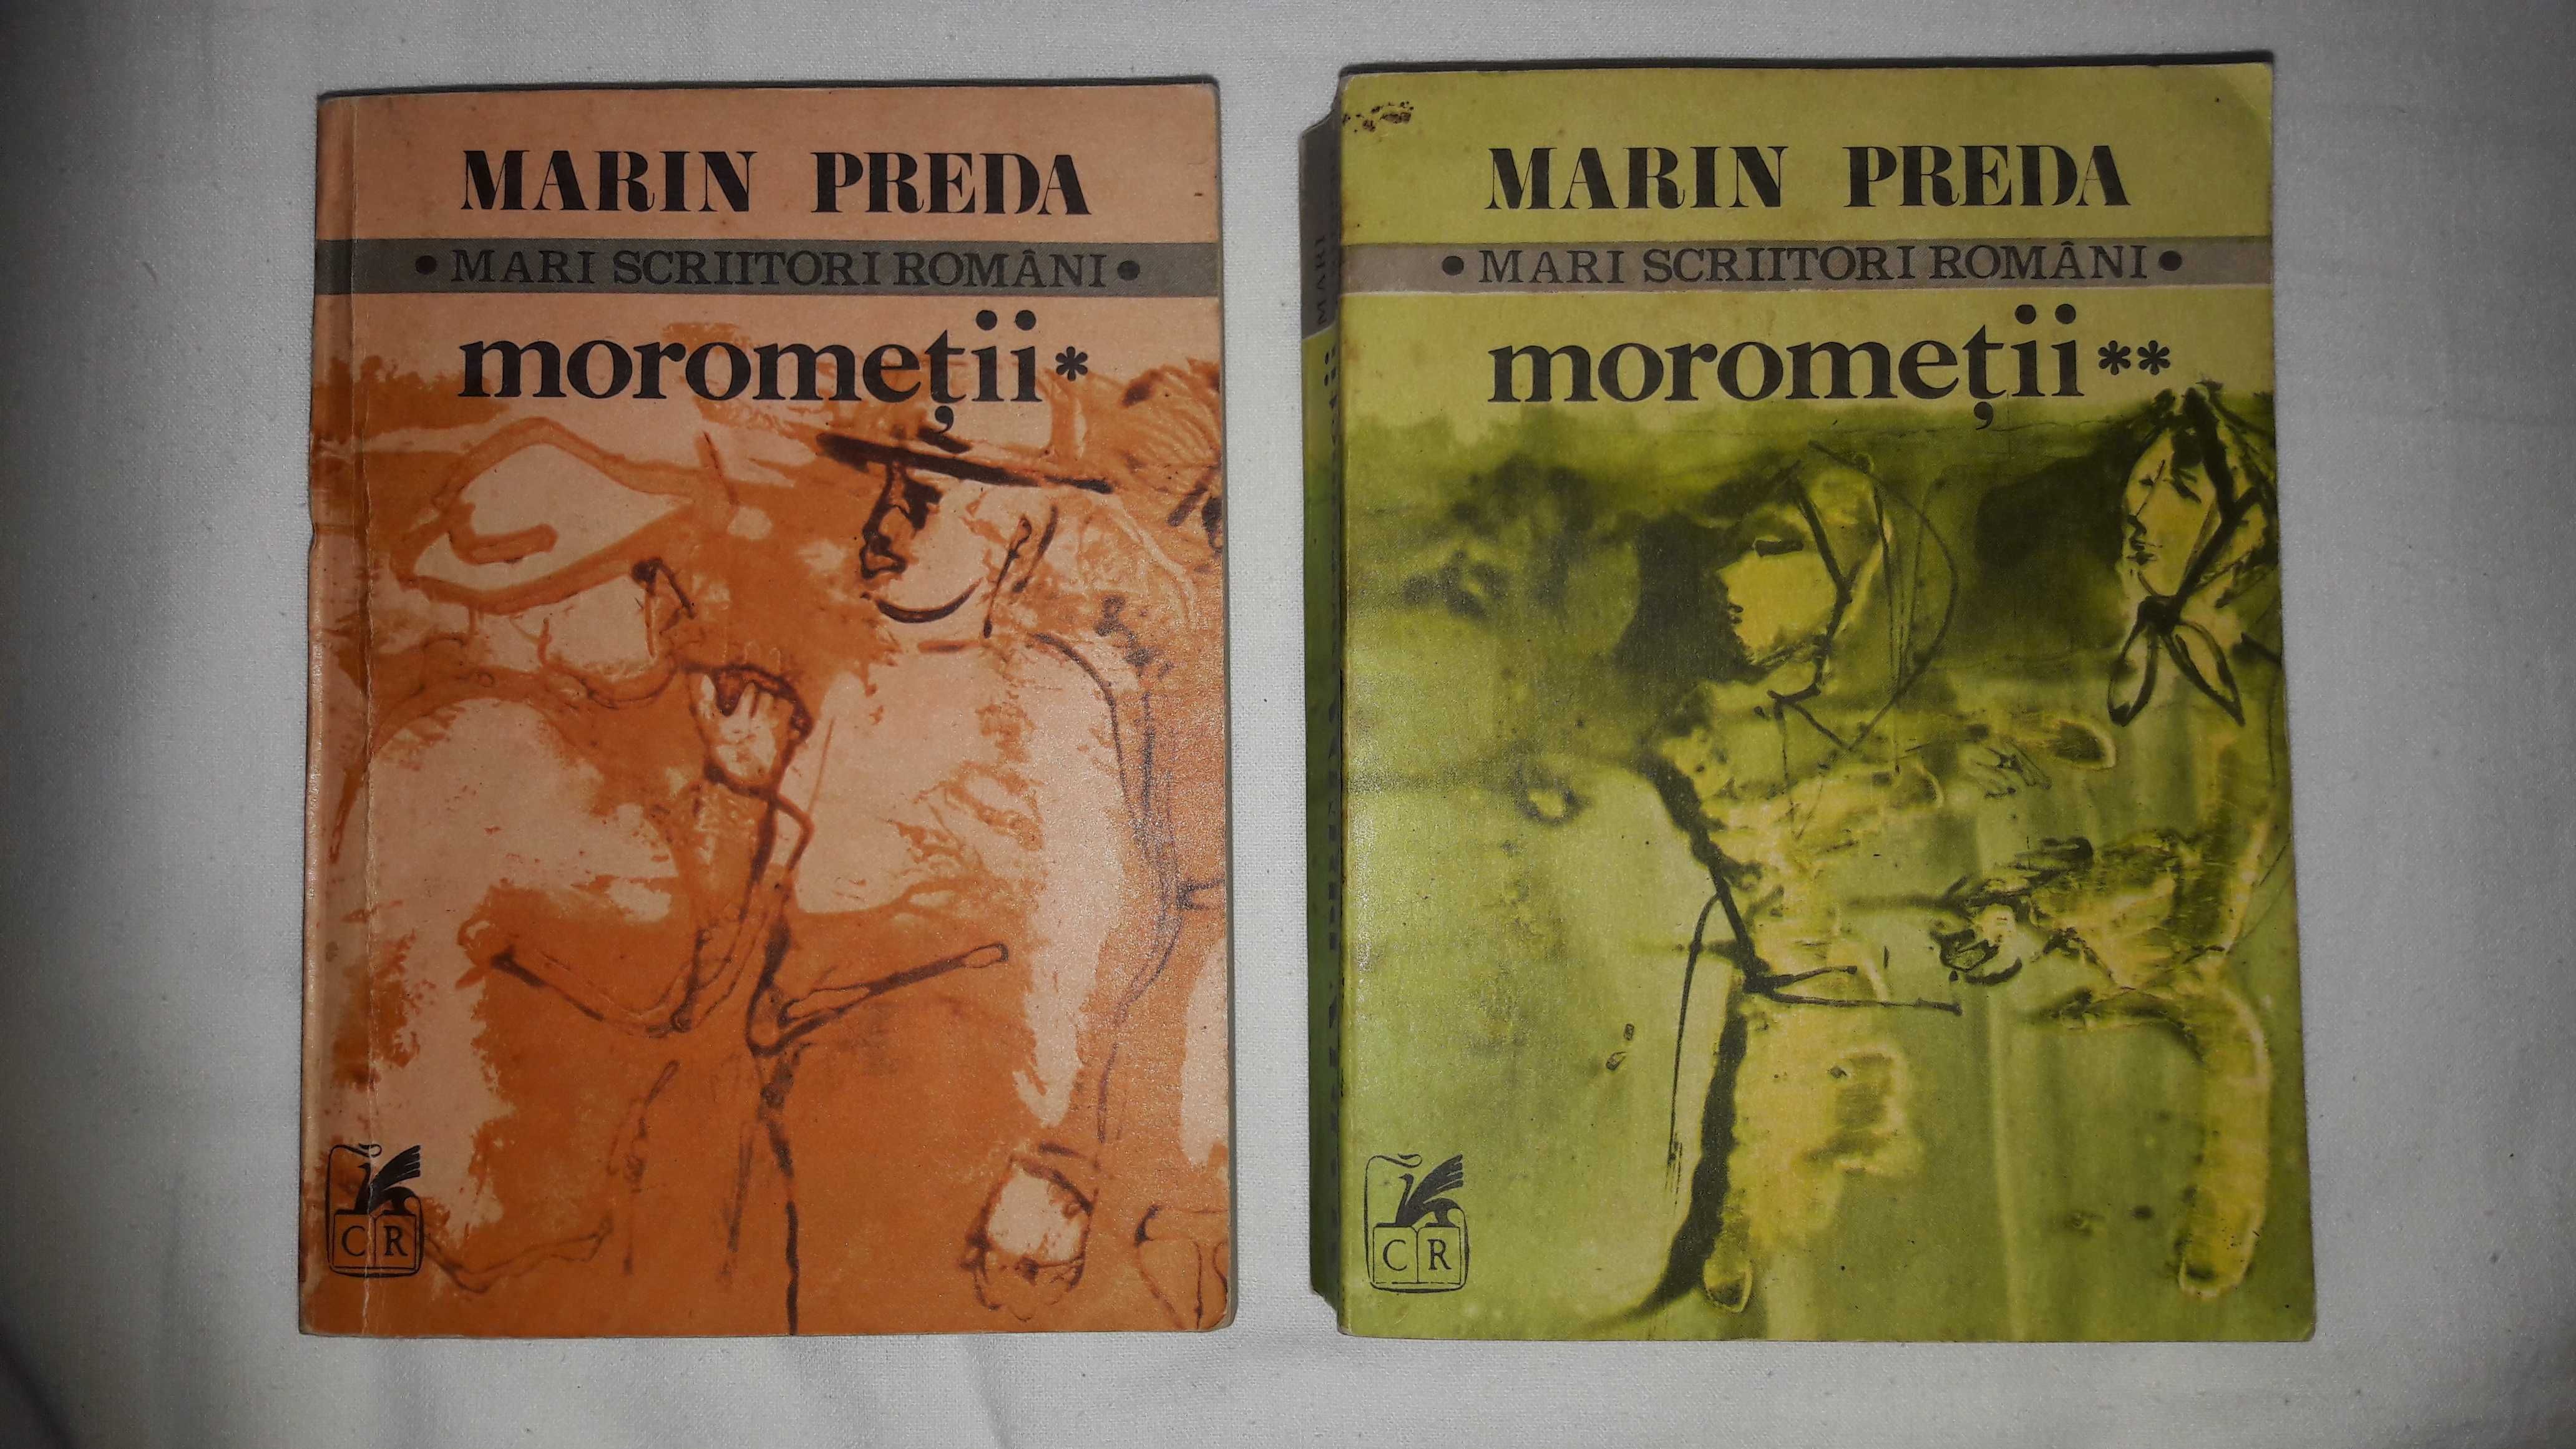 Cartile "Morometii" - Marin Preda, in 2 volume